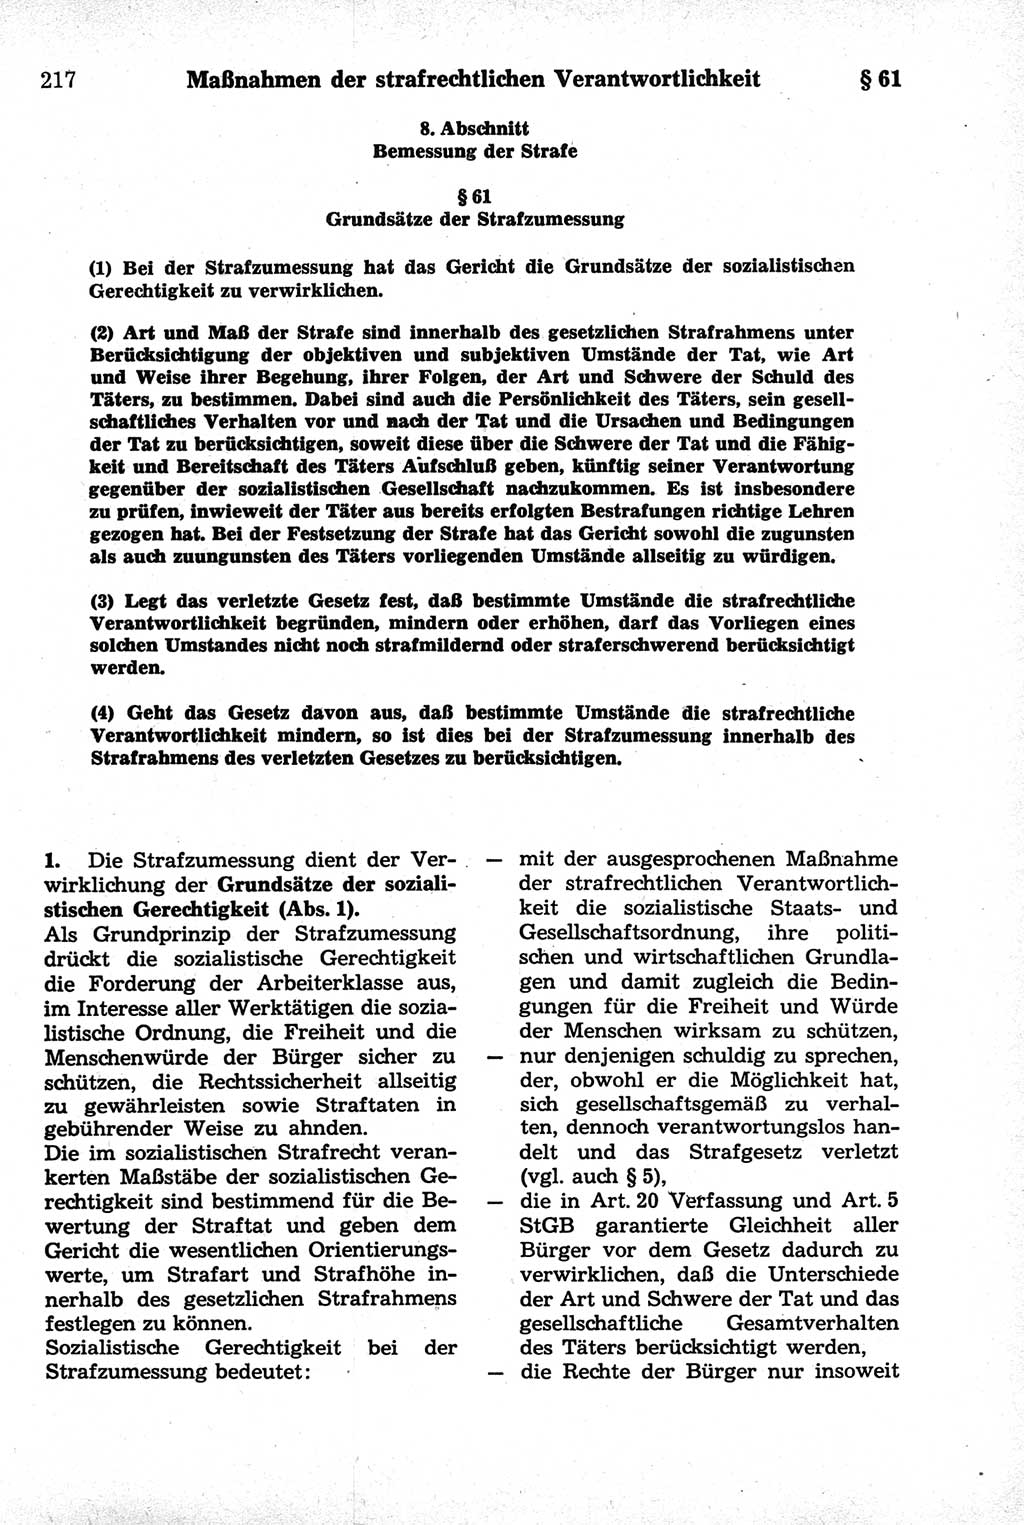 Strafrecht der Deutschen Demokratischen Republik (DDR), Kommentar zum Strafgesetzbuch (StGB) 1981, Seite 217 (Strafr. DDR Komm. StGB 1981, S. 217)